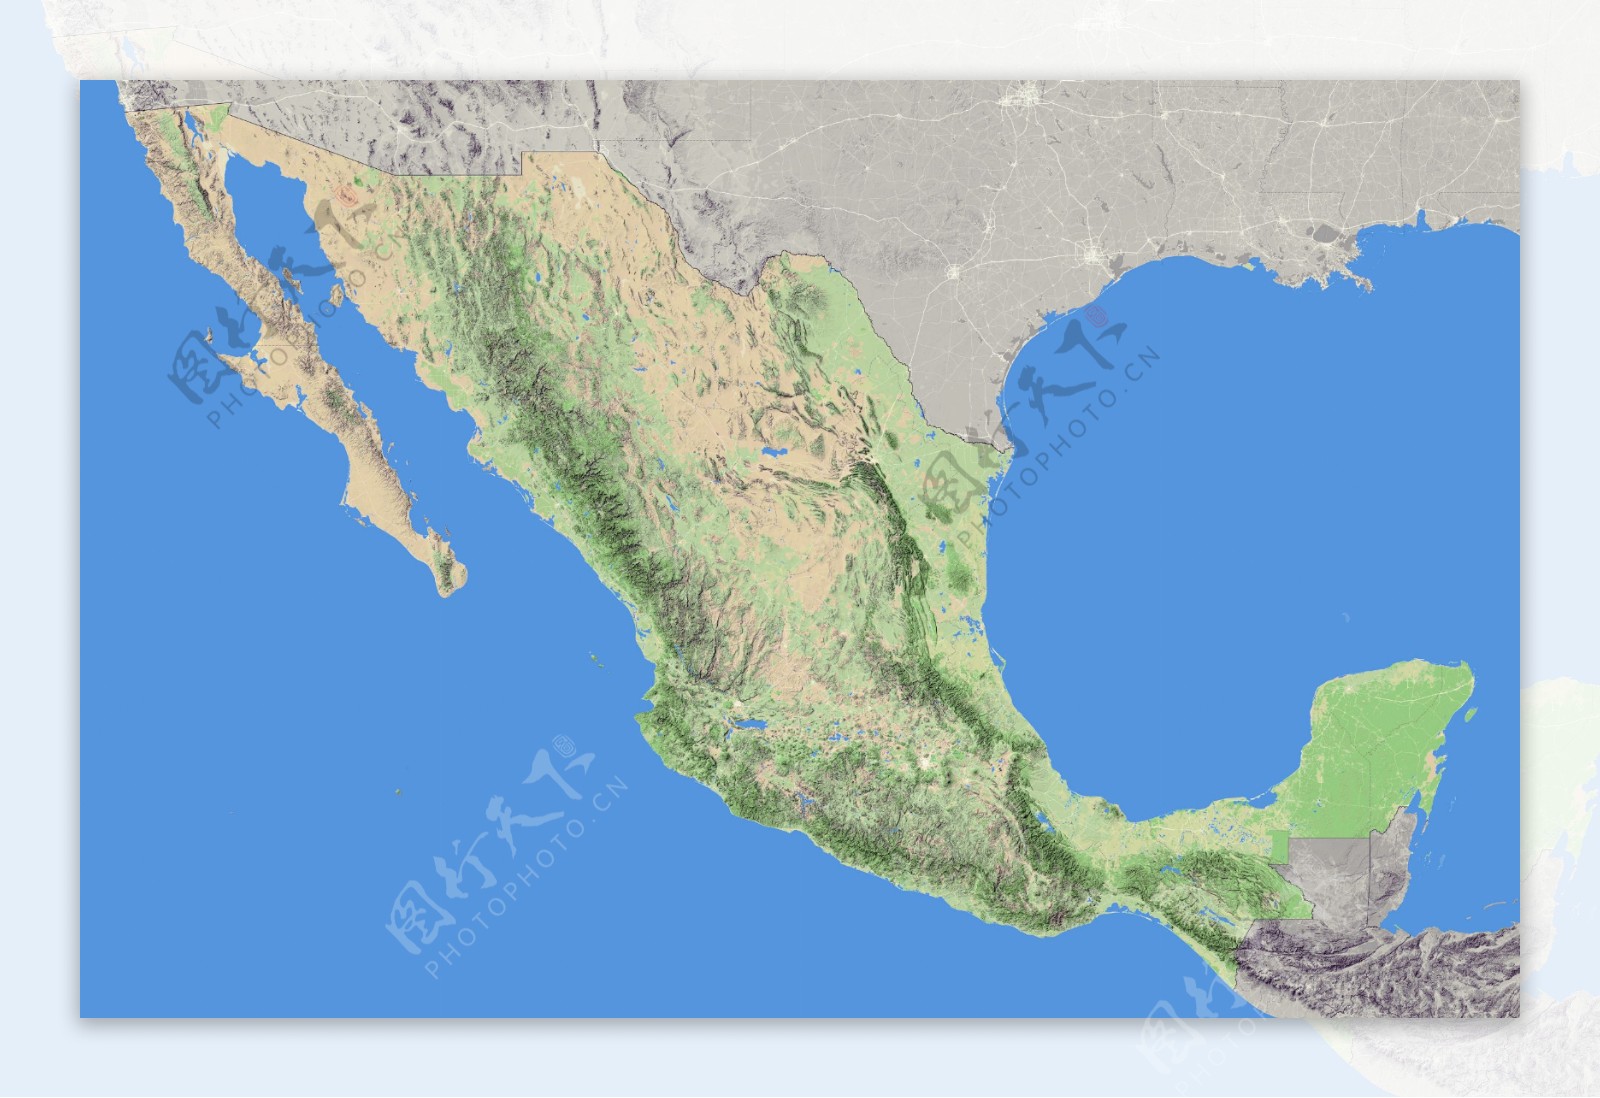 墨西哥地形图